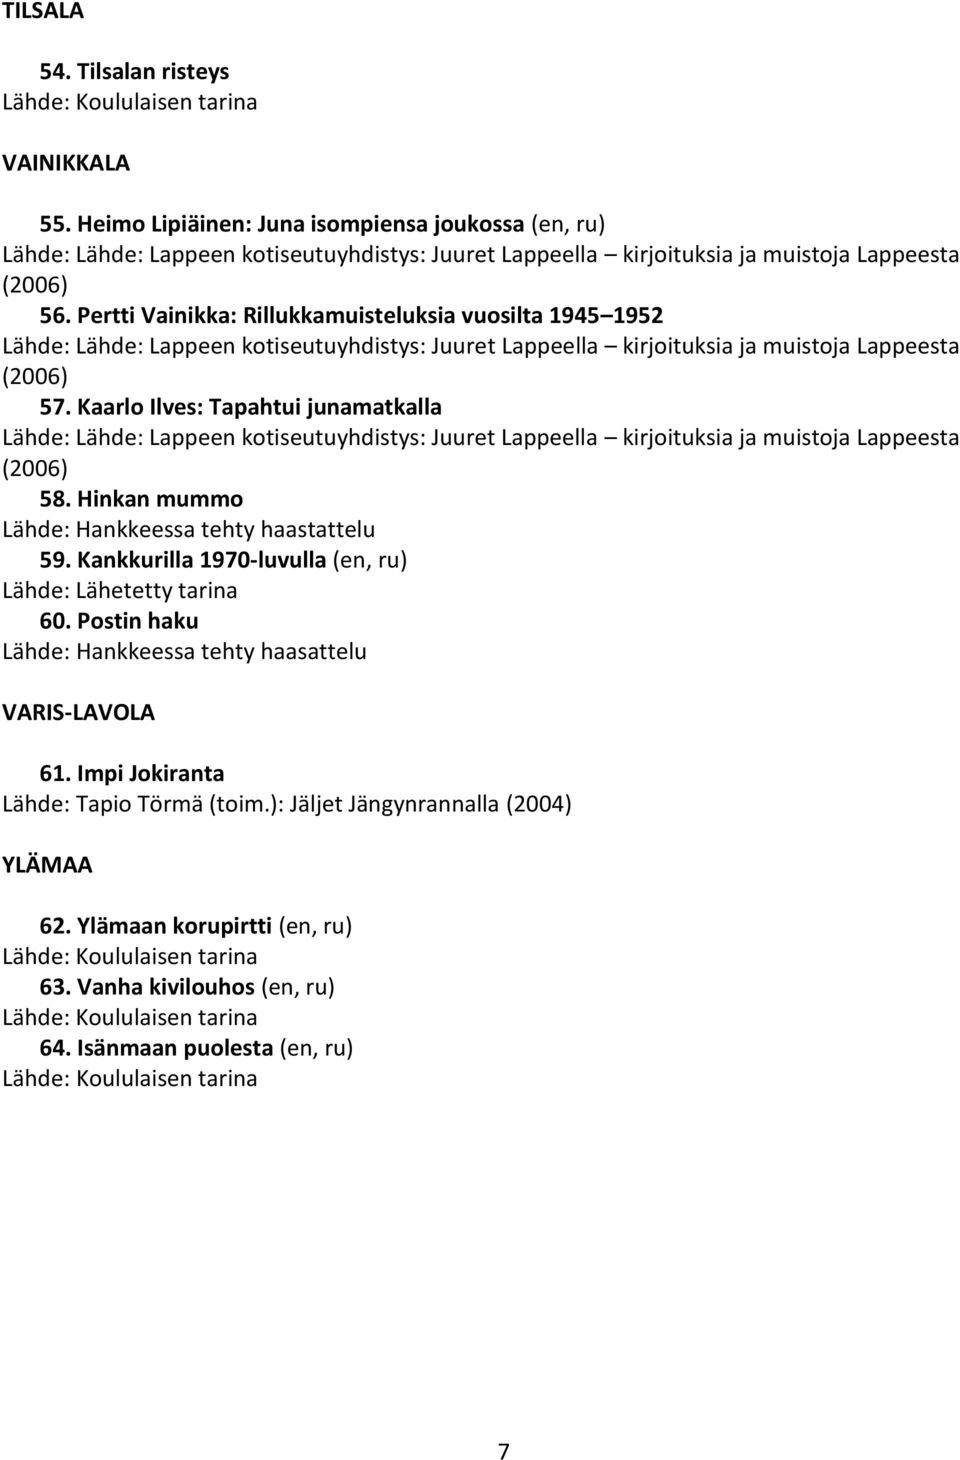 Kaarlo Ilves: Tapahtui junamatkalla Lähde: Lähde: Lappeen kotiseutuyhdistys: Juuret Lappeella kirjoituksia ja muistoja Lappeesta (2006) 58. Hinkan mummo 59. Kankkurilla 1970-luvulla (en, ru) 60.